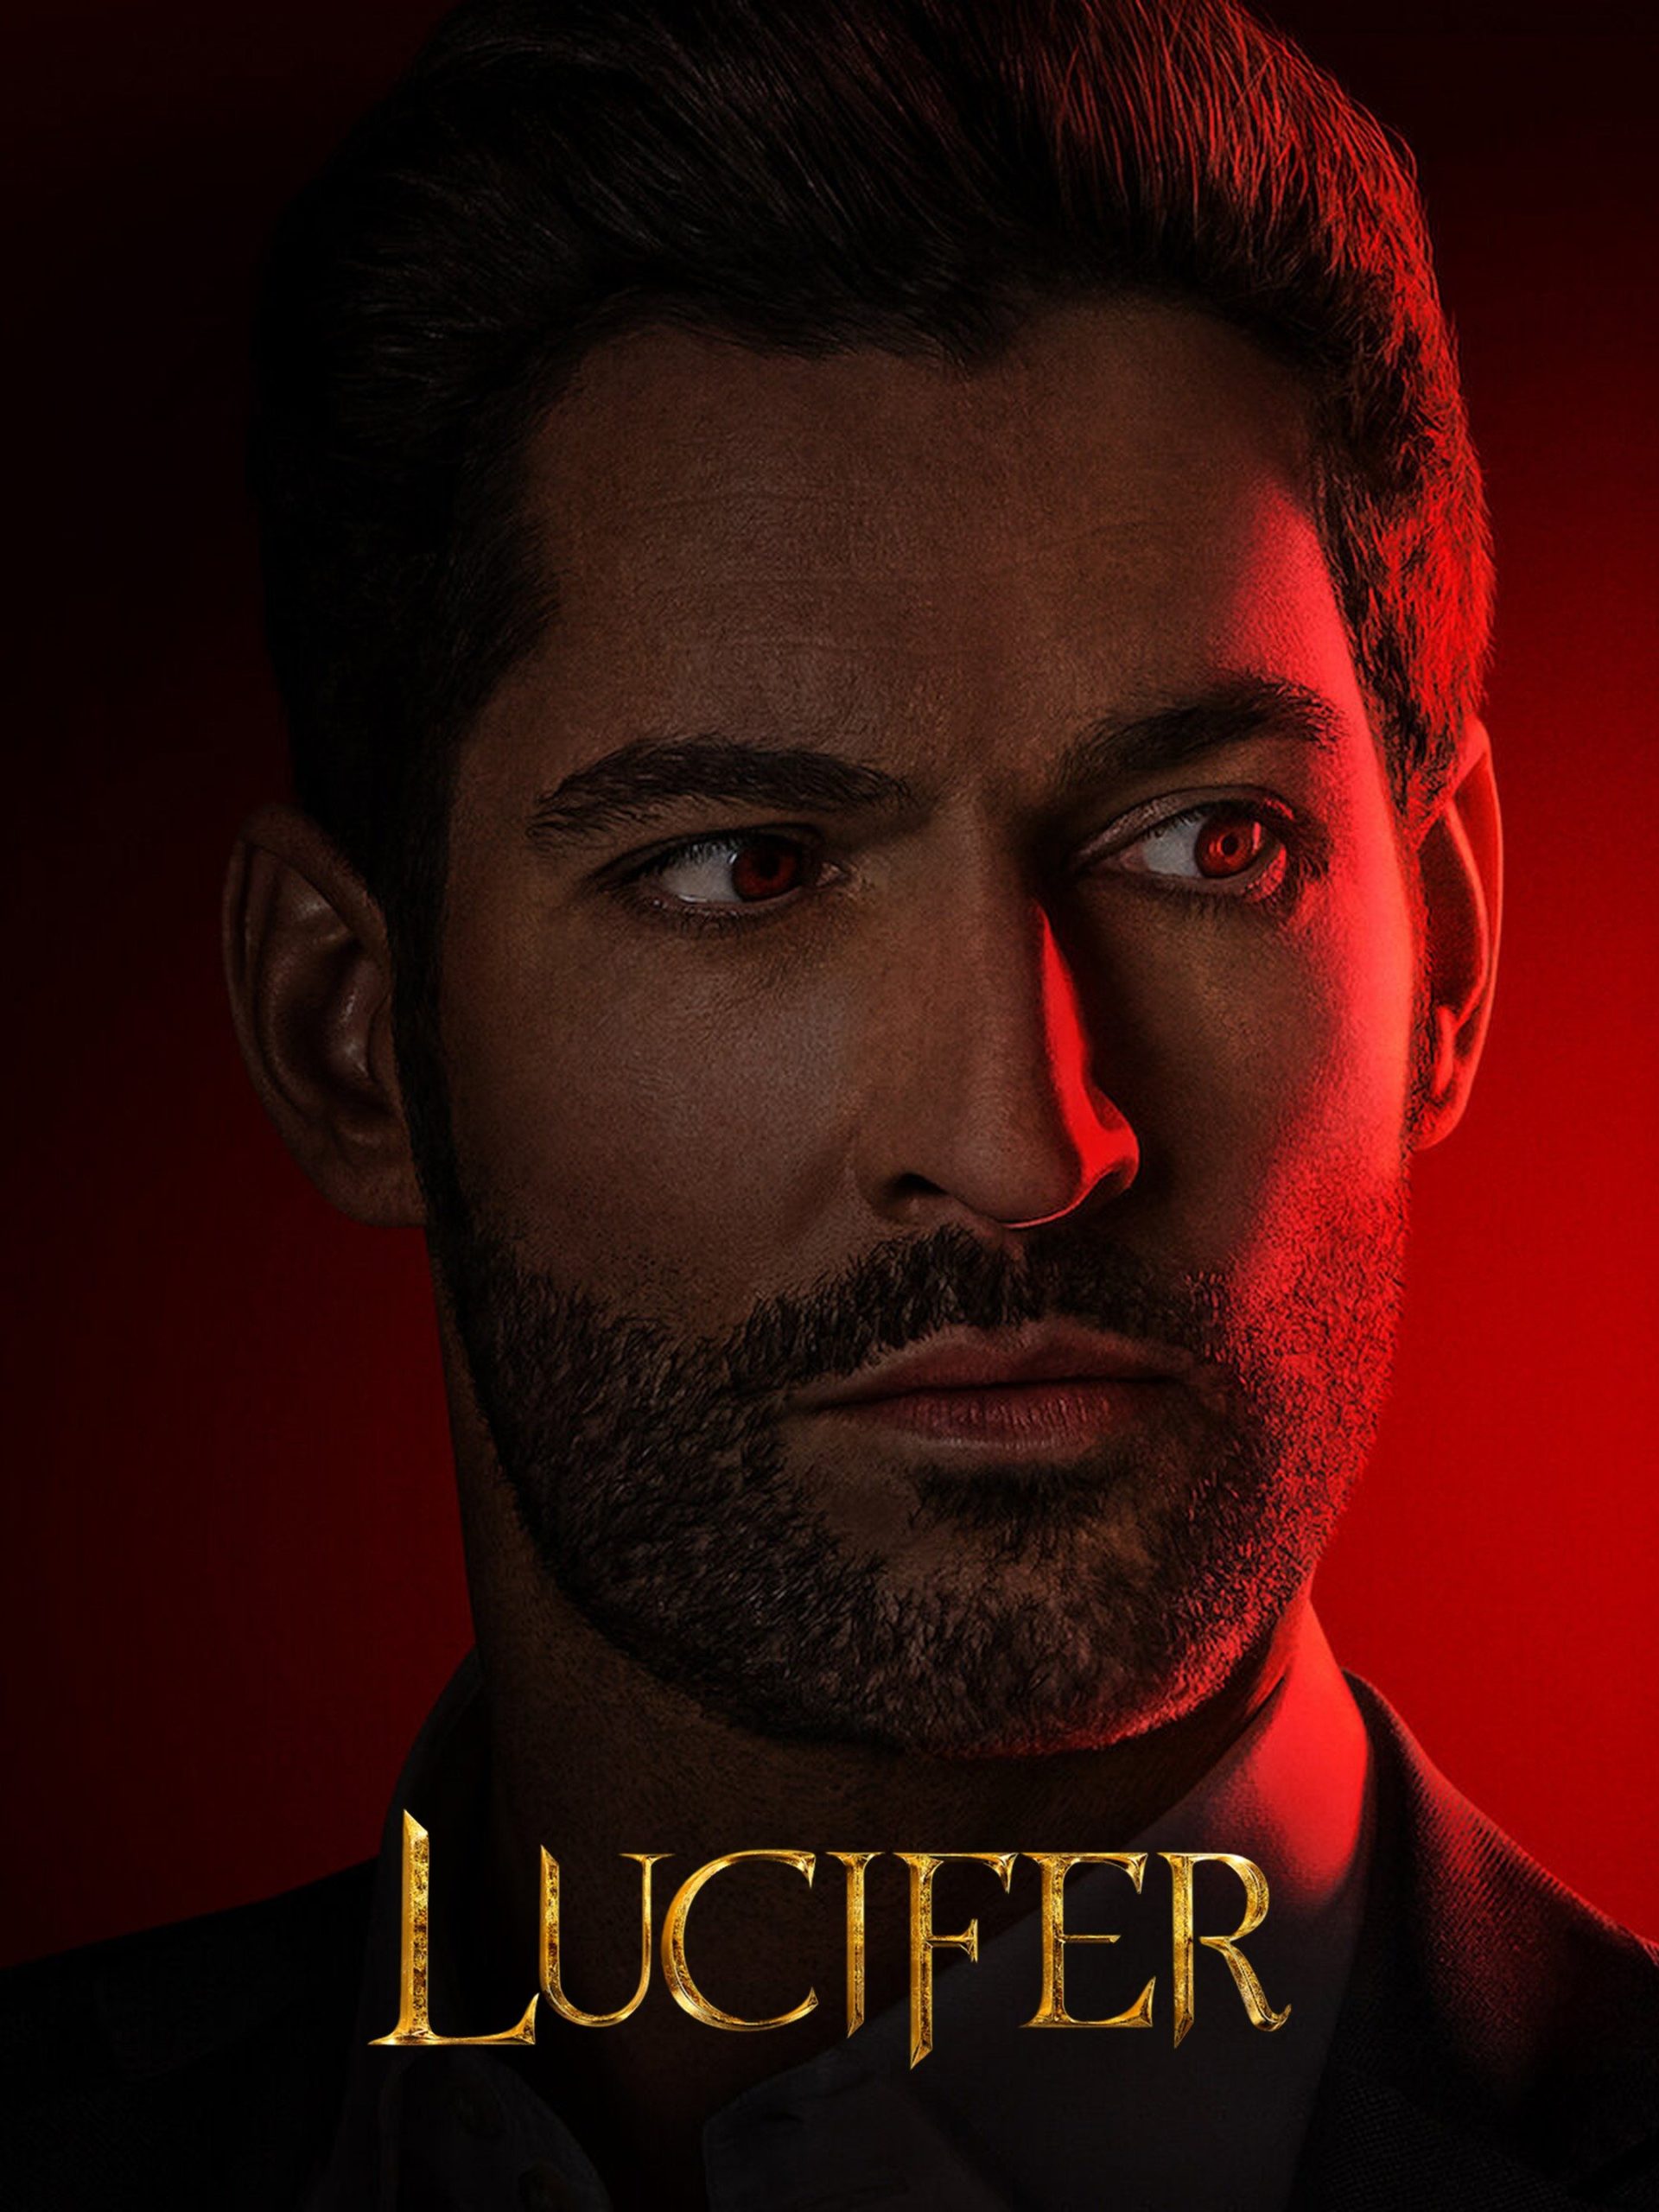 Lucifer Season 6 Final Season Final Episodes Season 1 Character Returns!